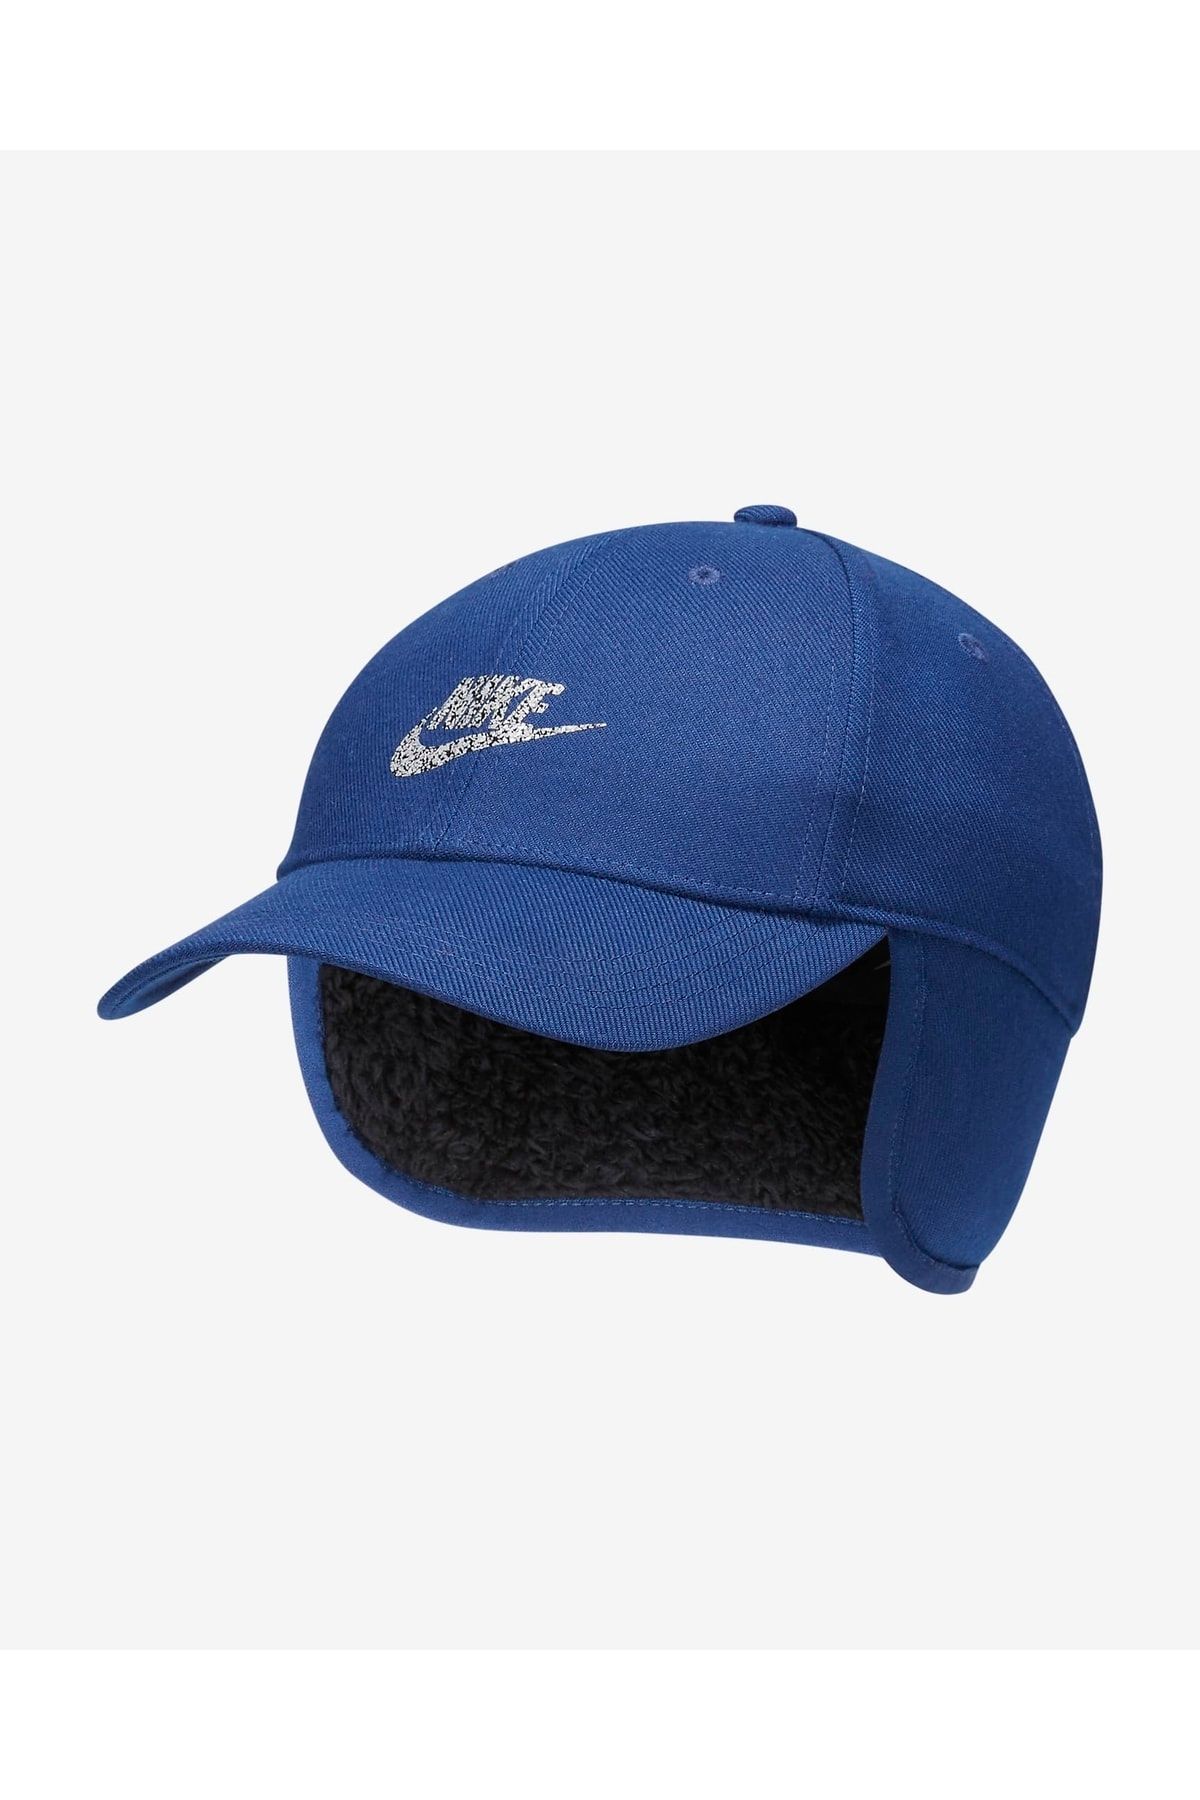 Nike Winterized Genç Çocuk Şapkası